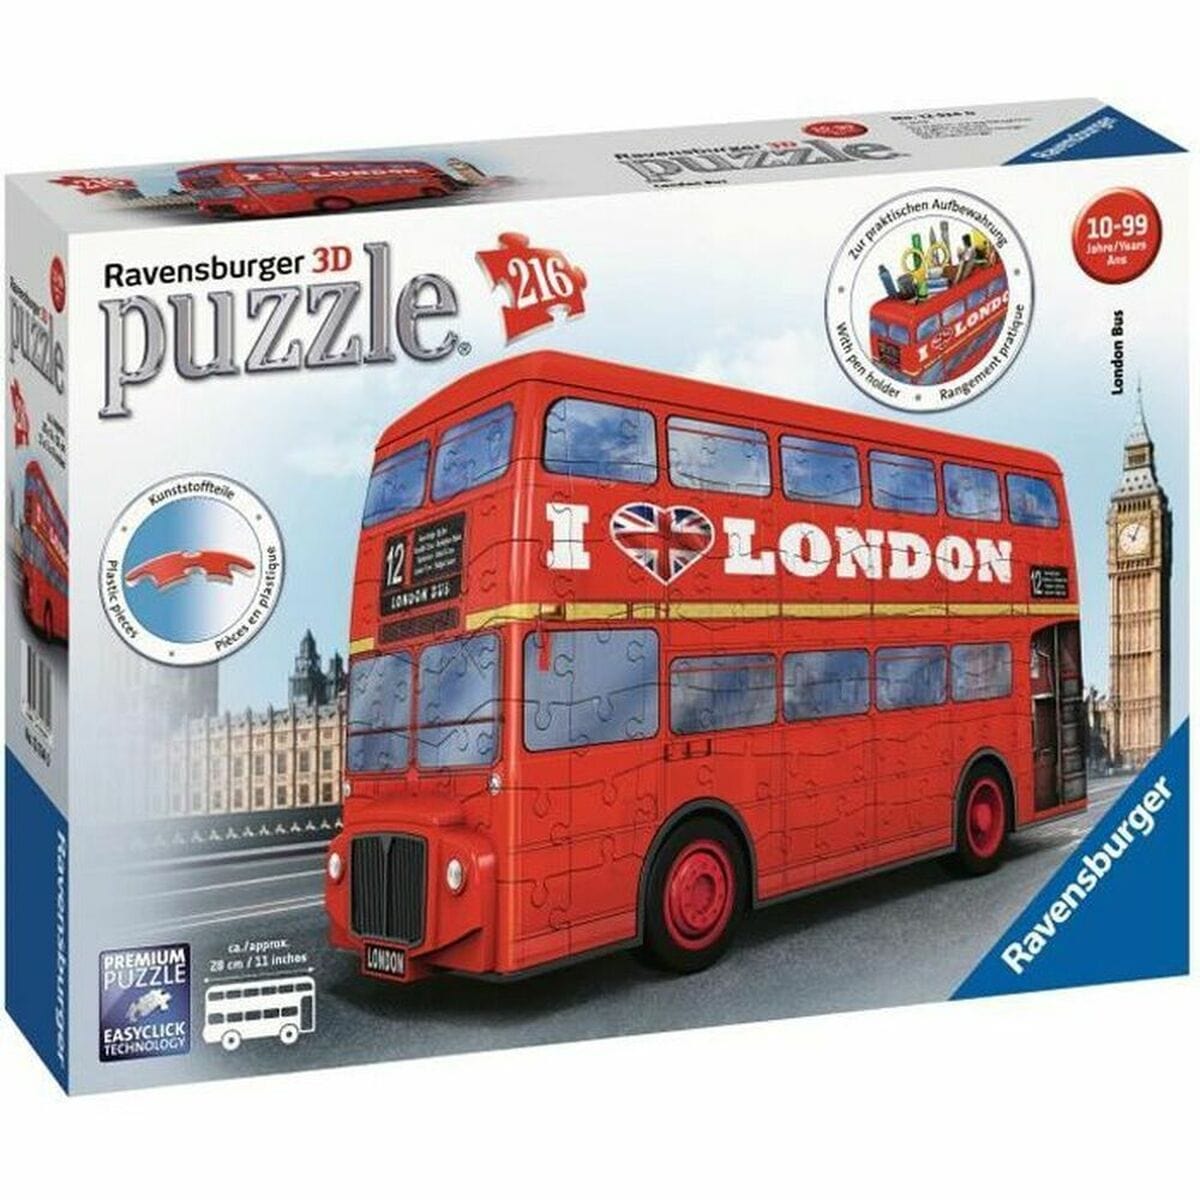 Ravensburger Spielzeug | Kostüme > Spielzeug und Spiele > Puzzle und Bauklötzchen 3D Puzzle Ravensburger London Bus 216 Stücke